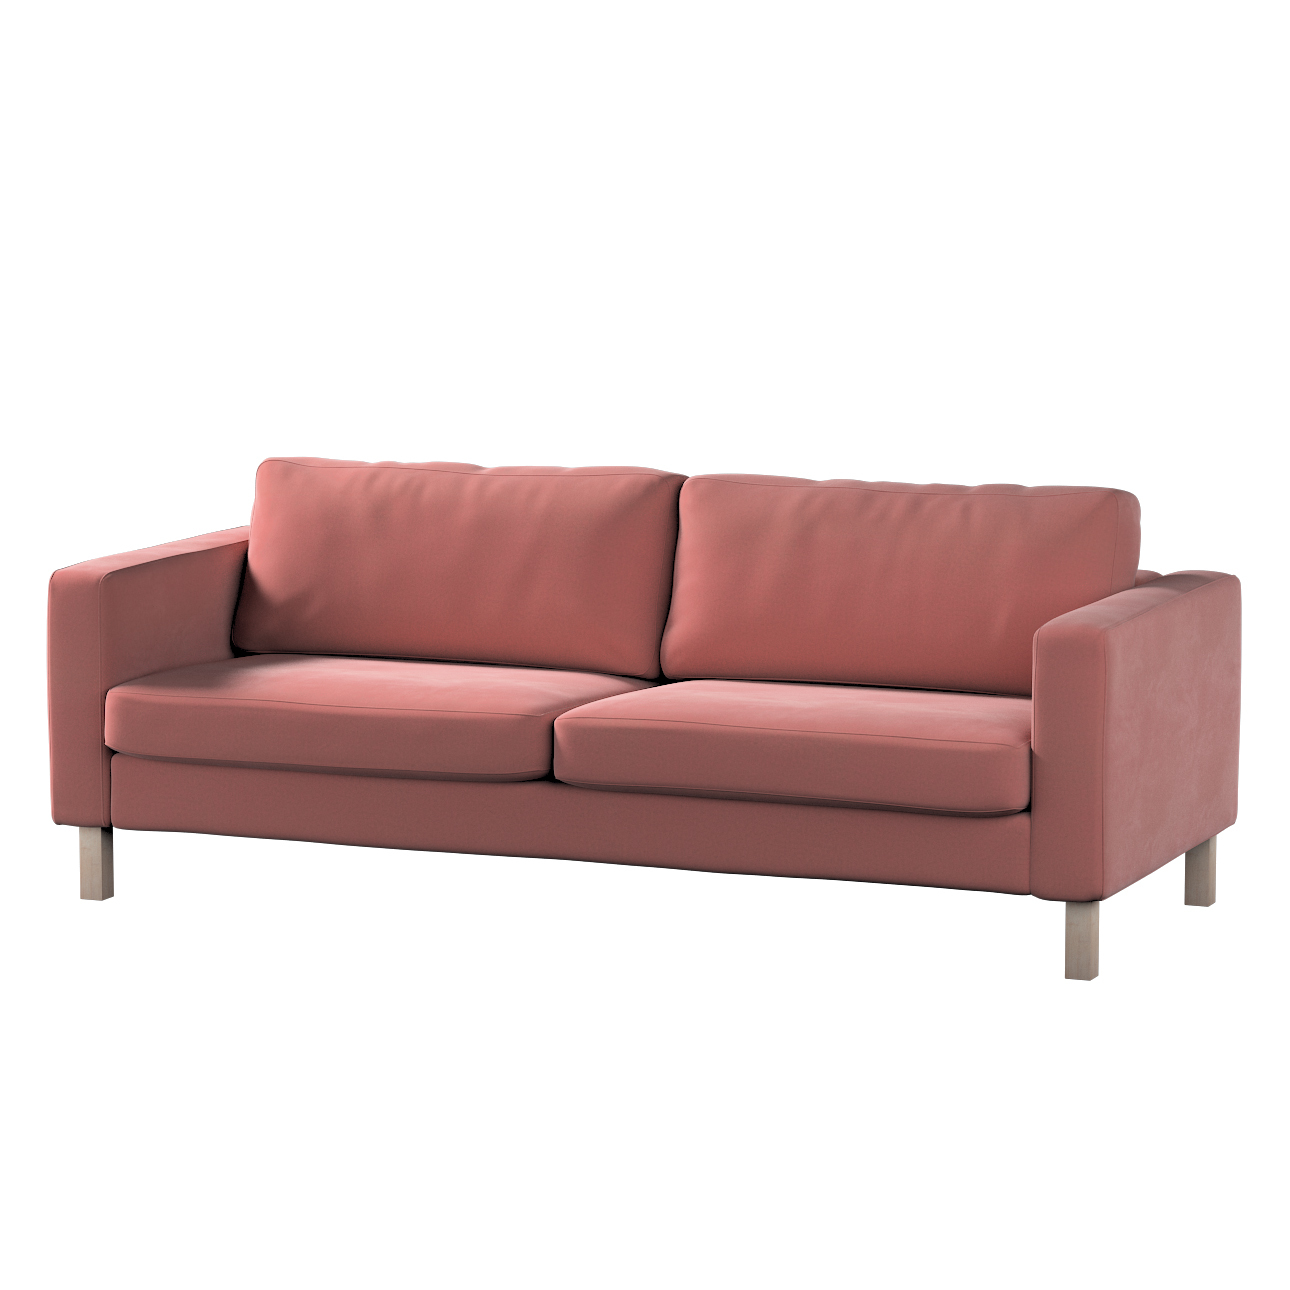 Bezug für Karlstad 3-Sitzer Sofa nicht ausklappbar, kurz, koralle, Bezug fü günstig online kaufen